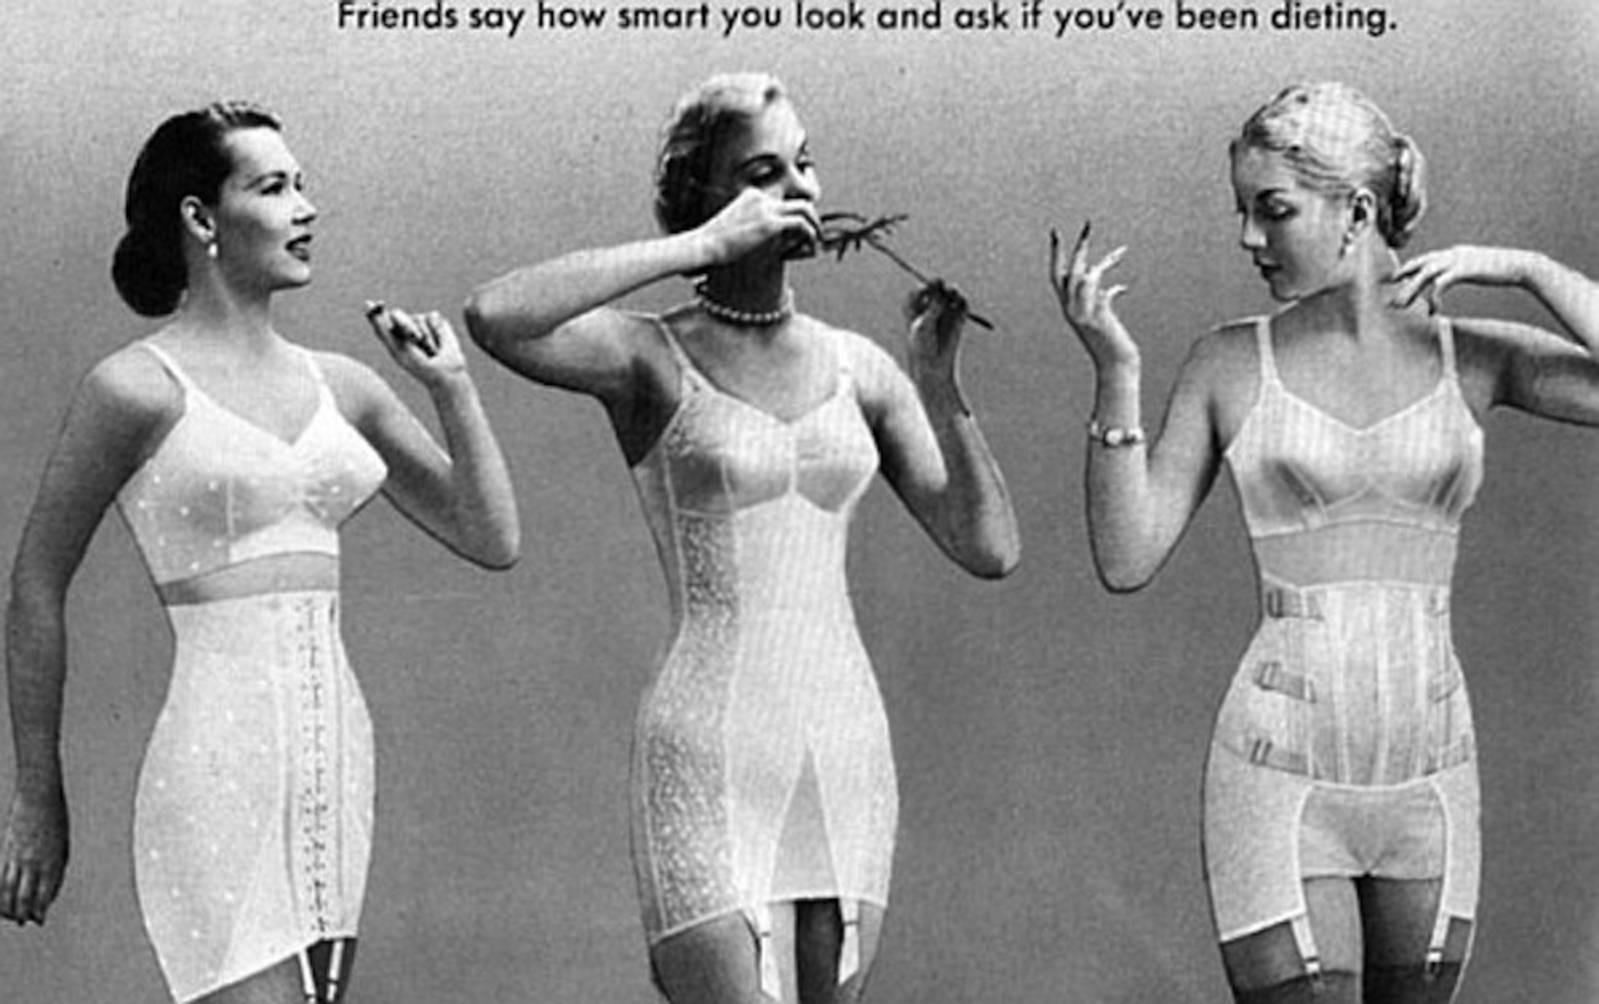 1950's women's undergarments